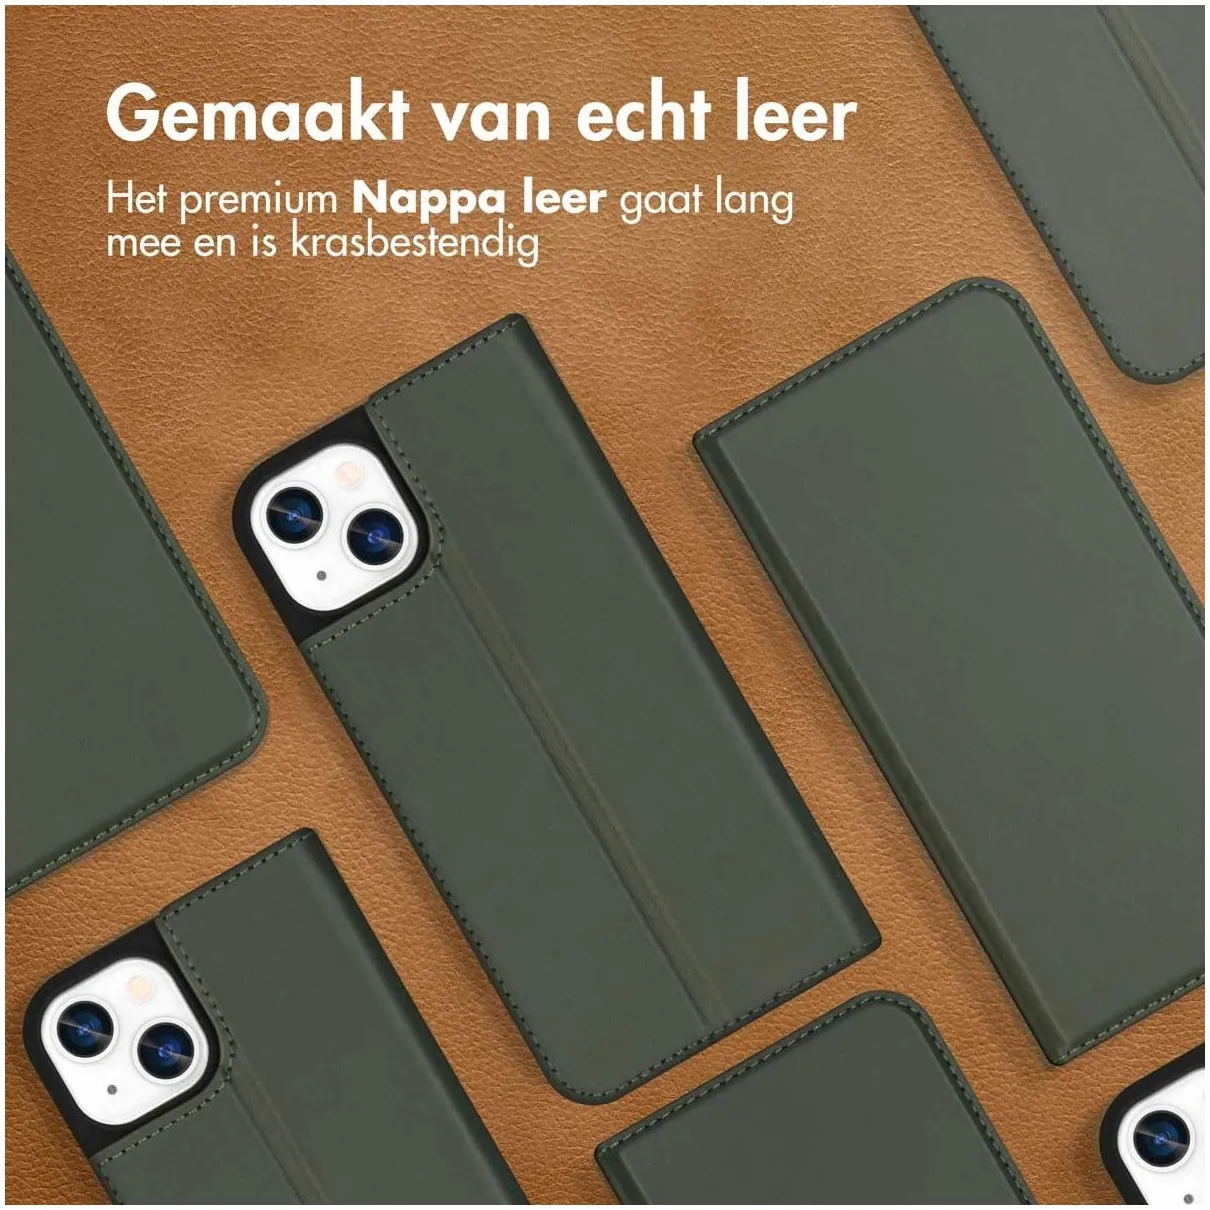 Accezz Premium Leather Slim Book Case voor Apple iPhone 13 Groen